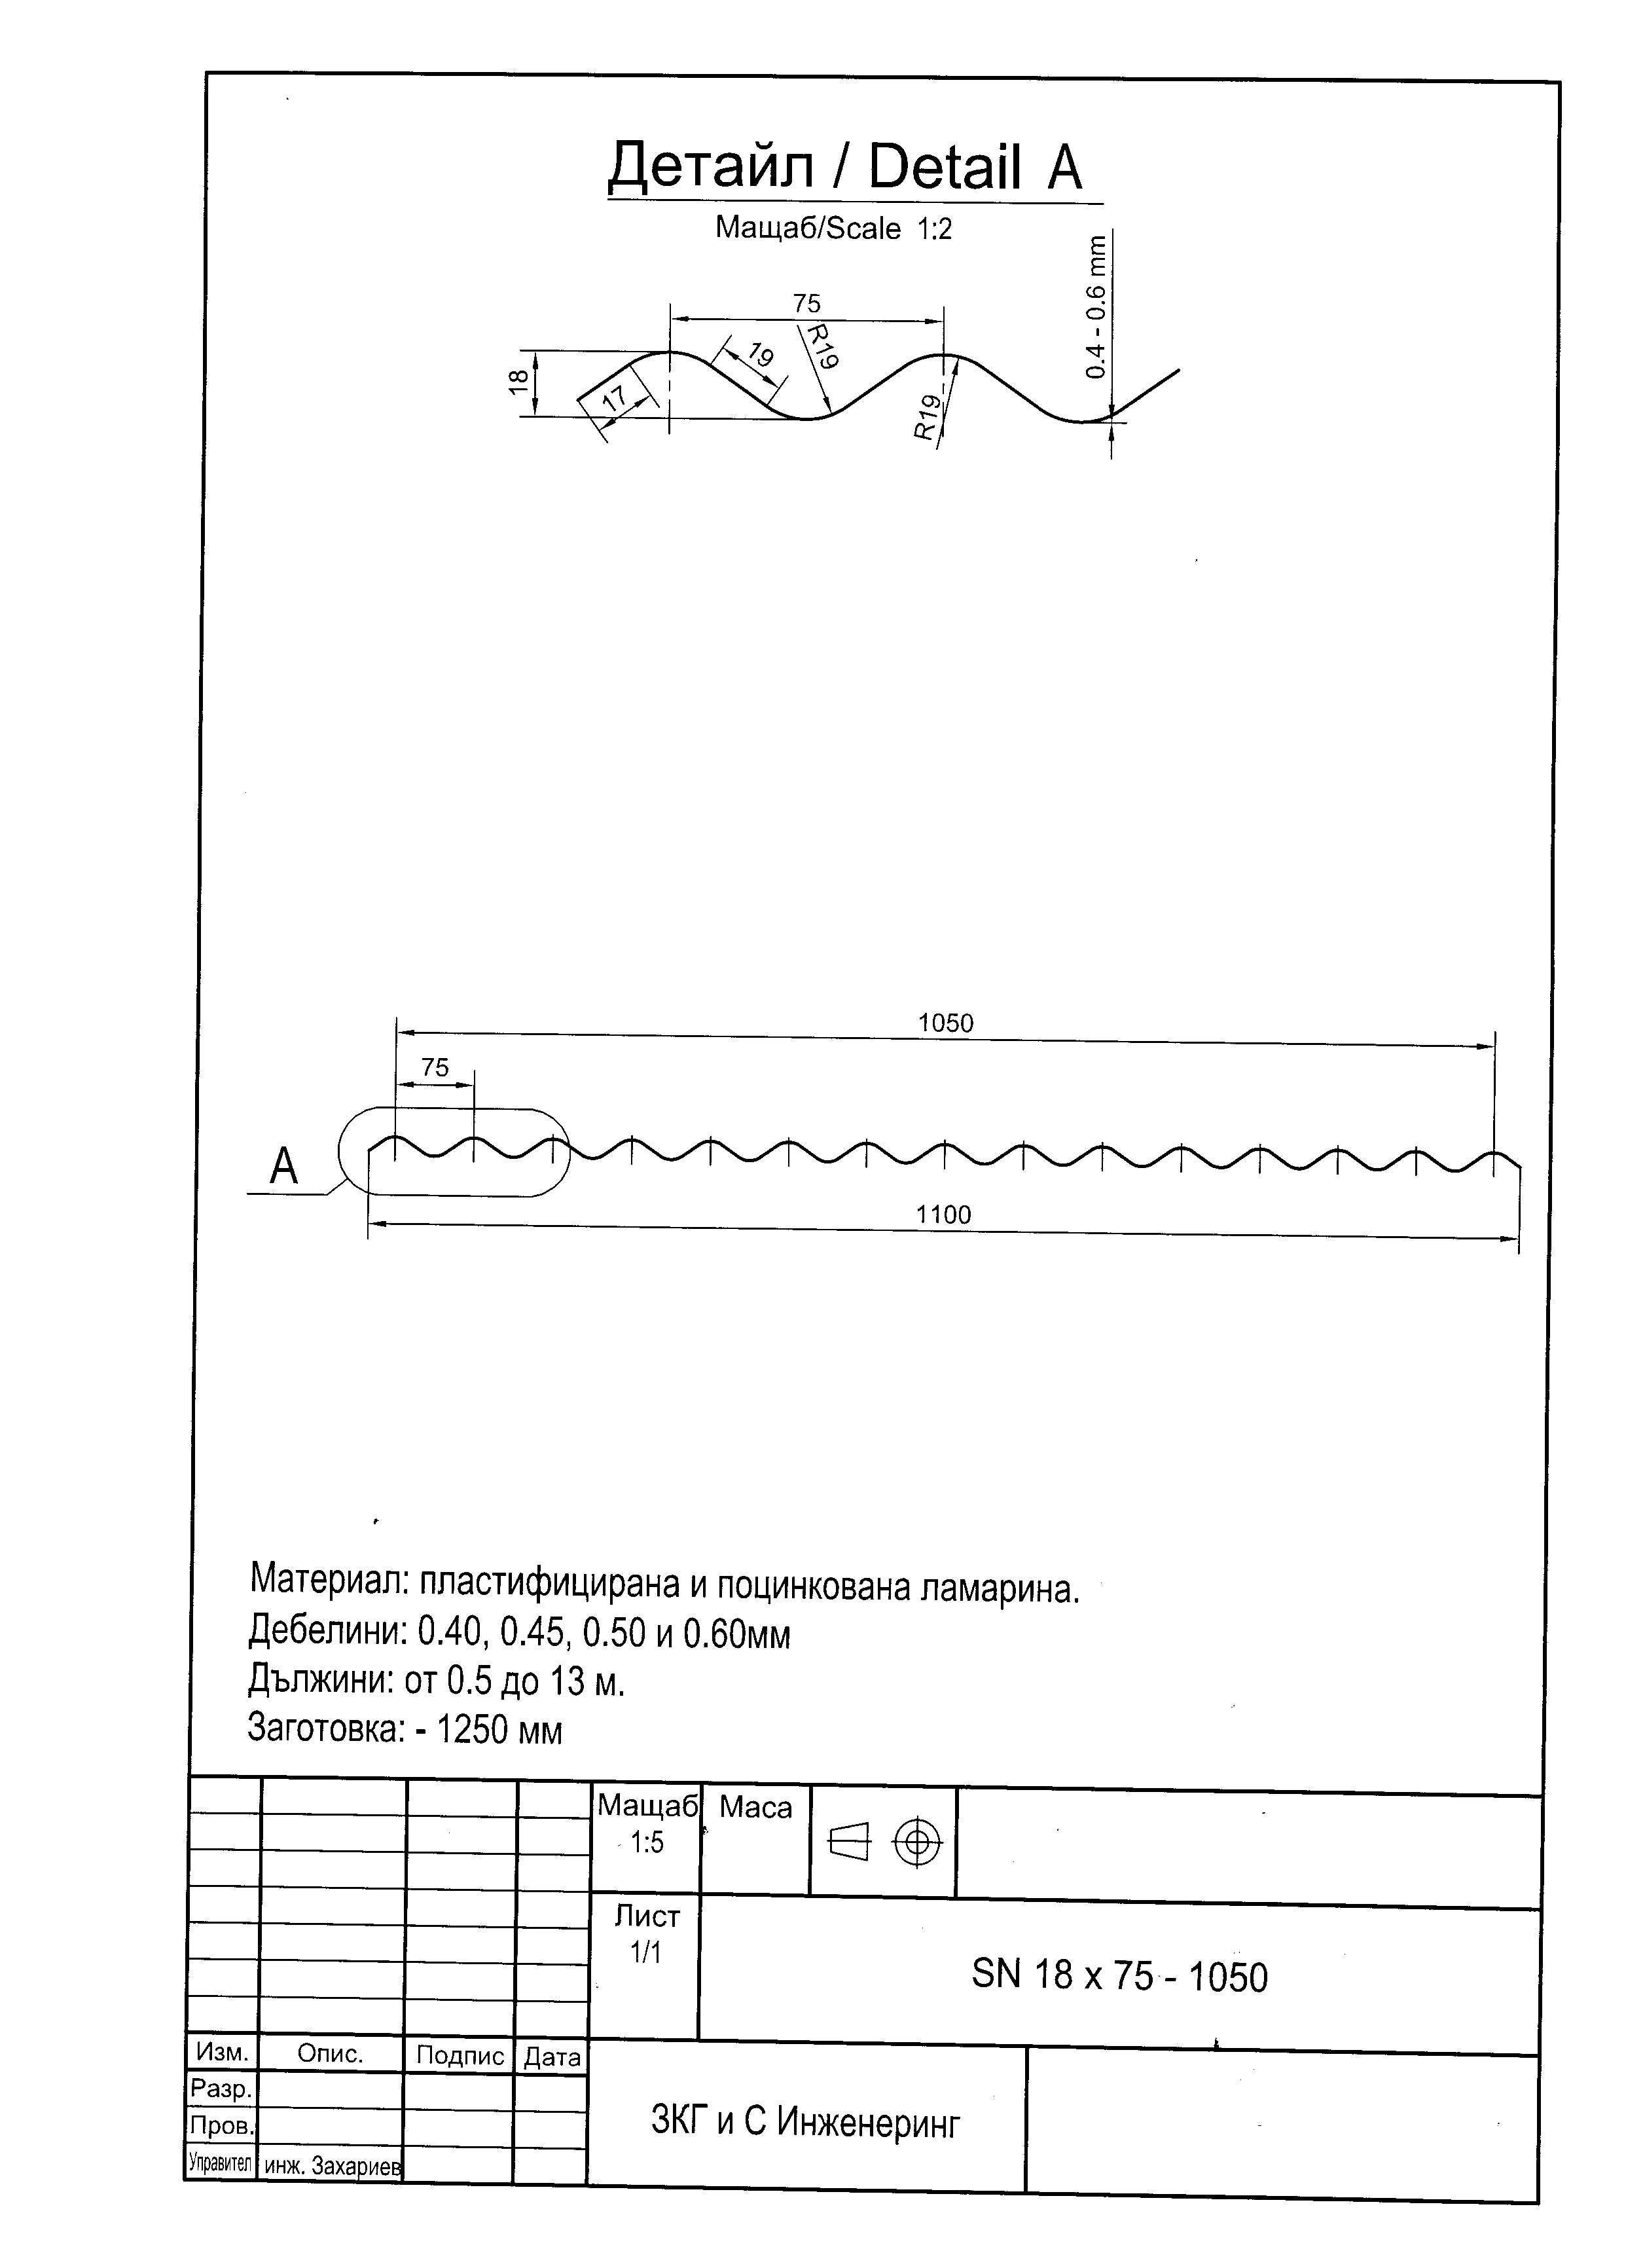 Вълнообразна поцинкована ламарина Sn18x75-1050 в София